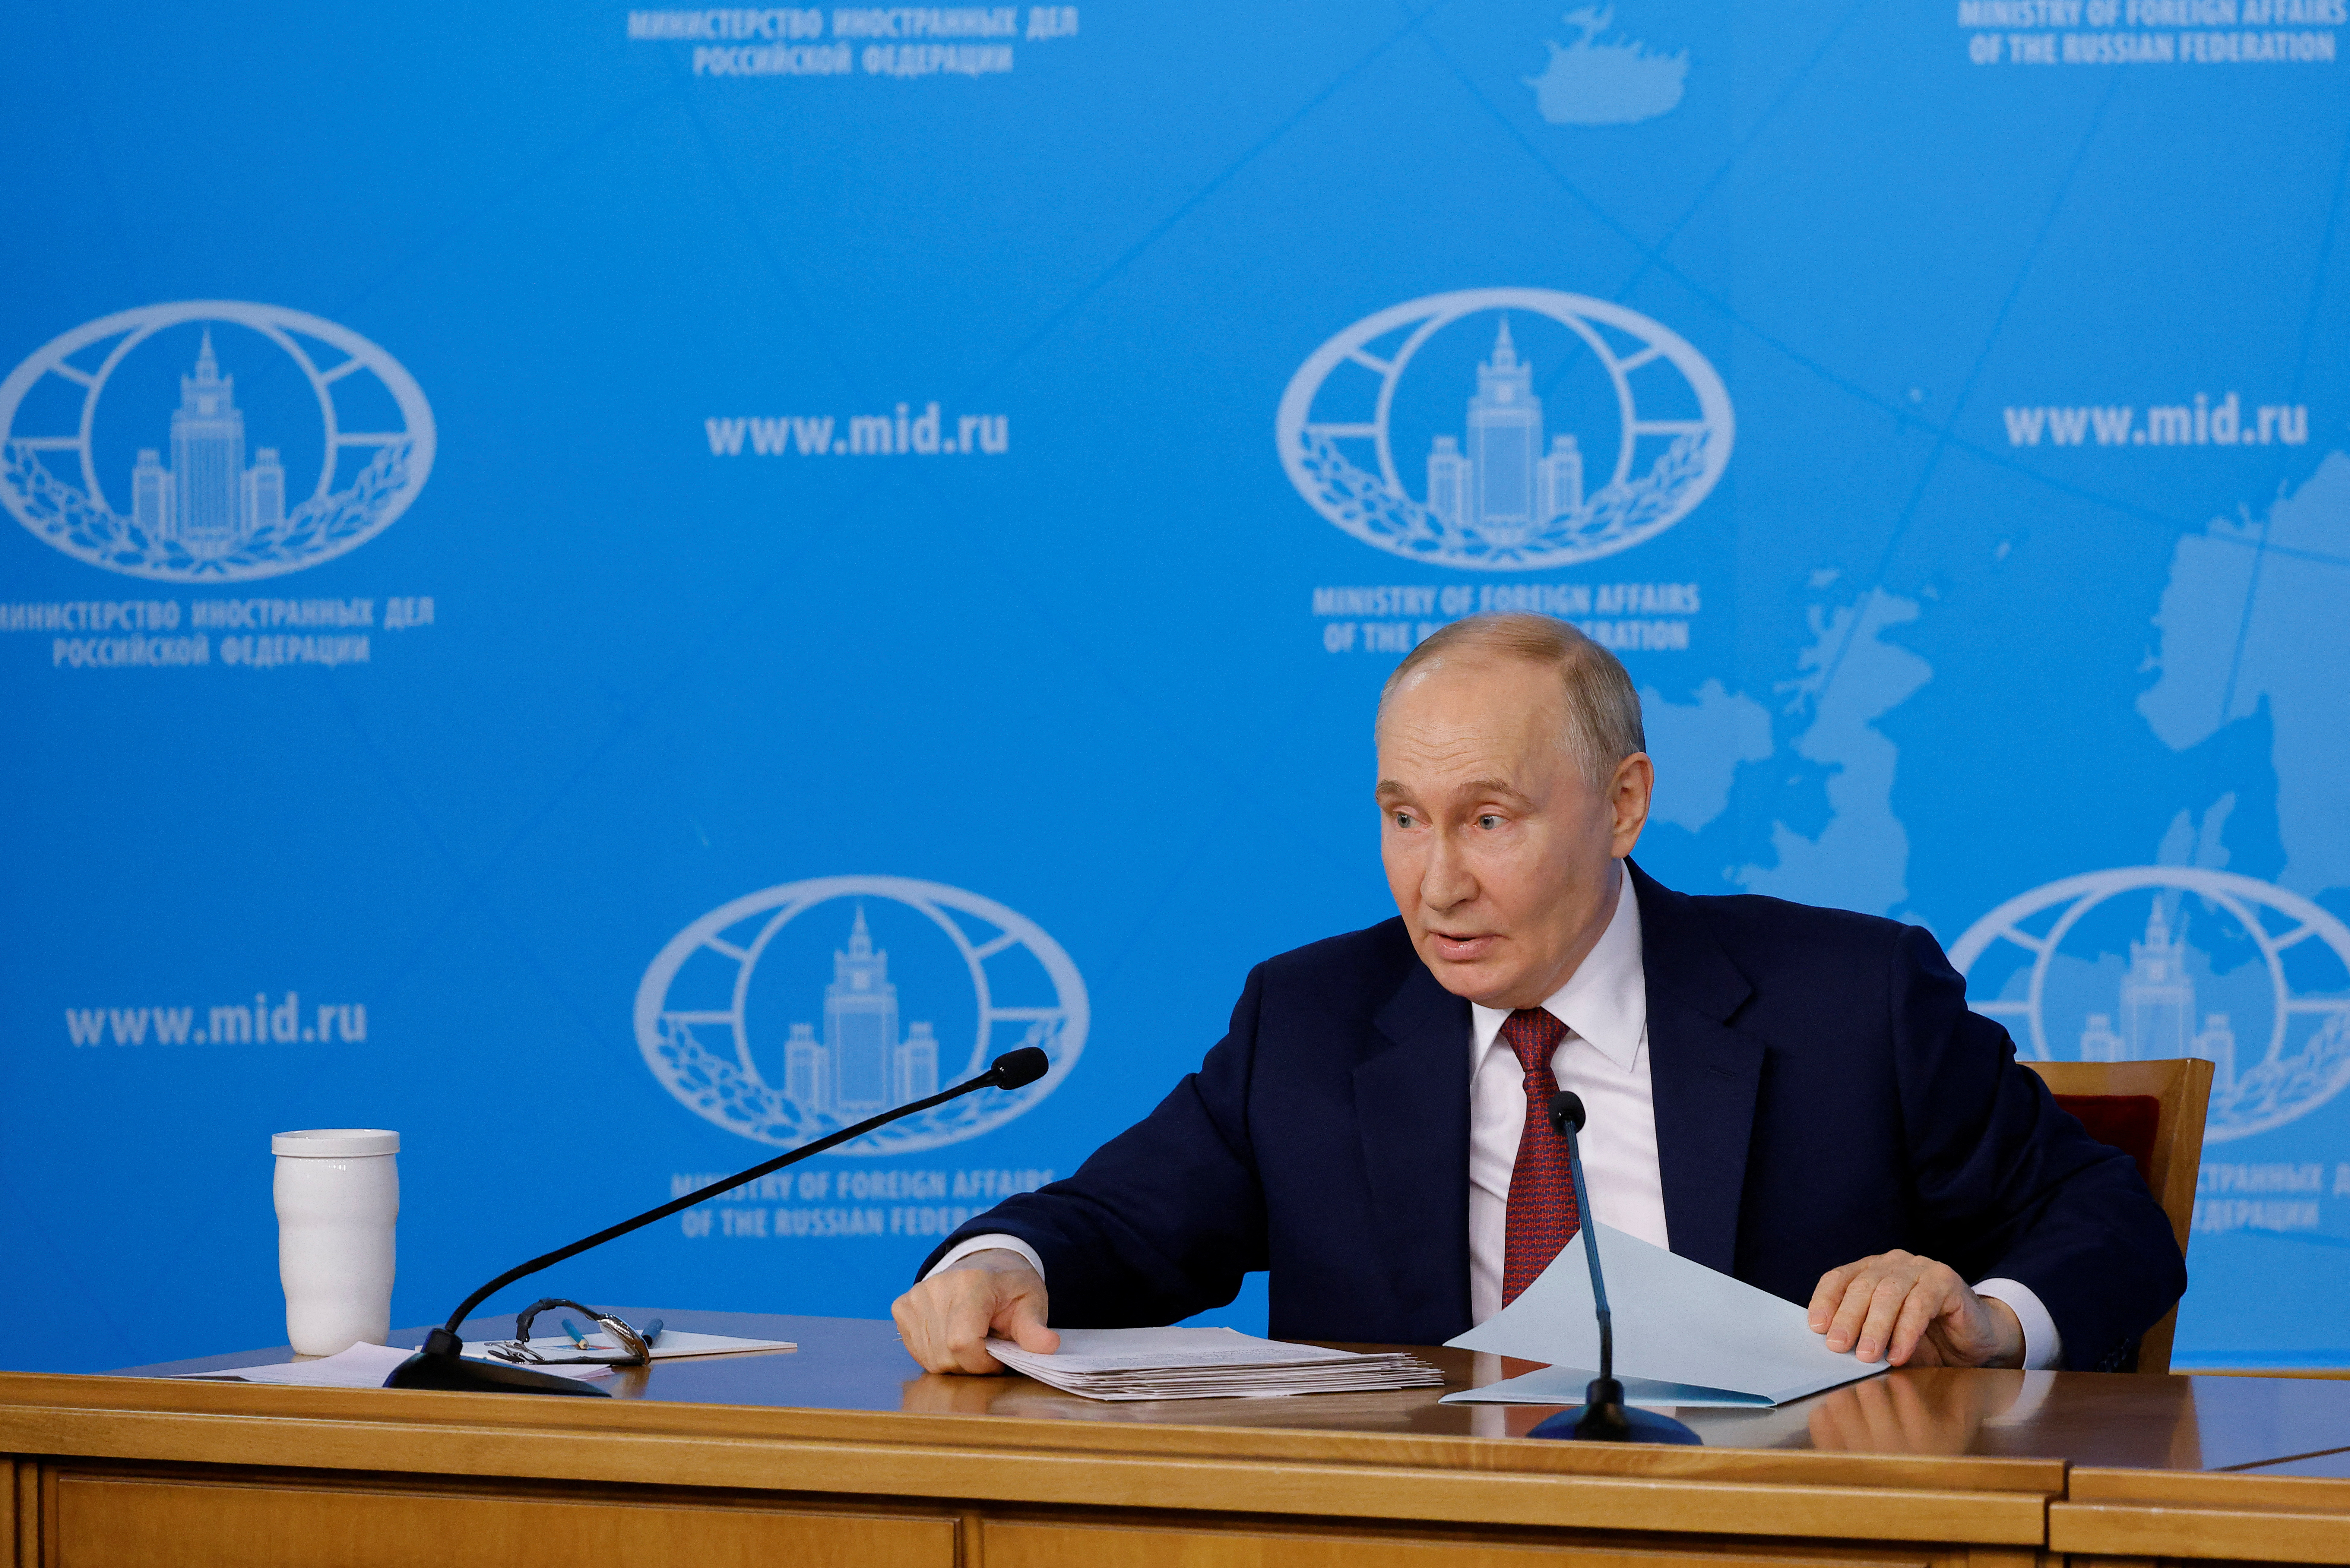 Πούτιν: Πρόταση κατάπαυσης πυρός στην Ουκρανία με διατήρηση των κεκτημένων  και απειλές στη Δύση – «Είμαστε κοντά στο σημείο χωρίς επιστροφή»